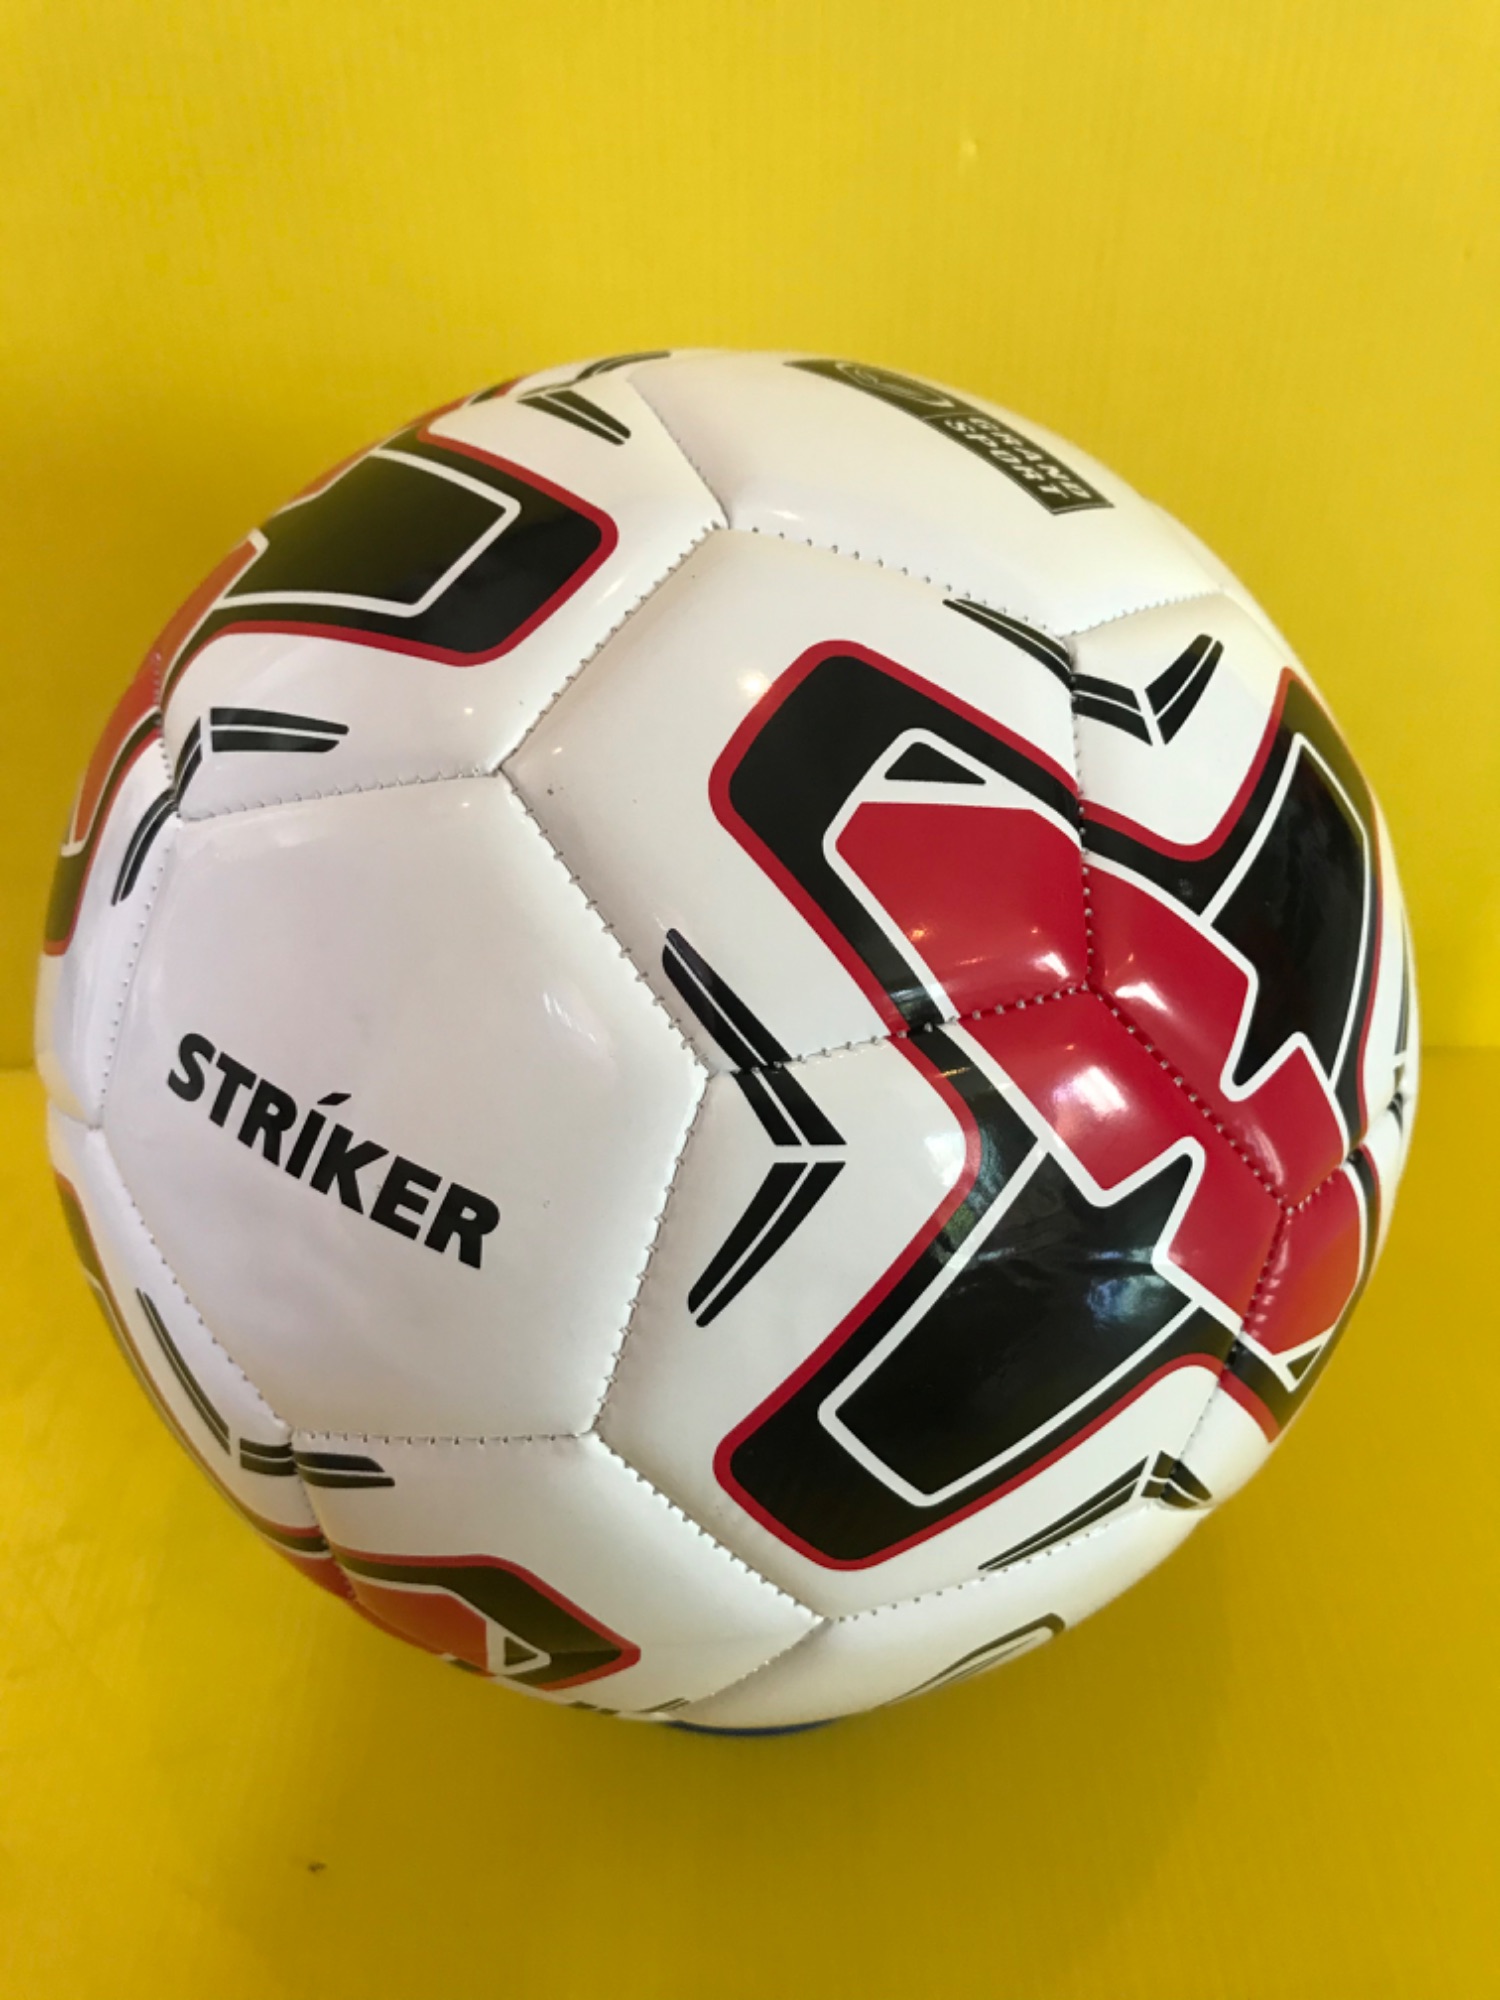 [ของแท้ 100%] ลูกฟุตบอลหนังเย็บเครื่อง ลูกบอล Striker หนัง PVC เบอร์ 5 Grand Sport(แกรนสปอร์ต)